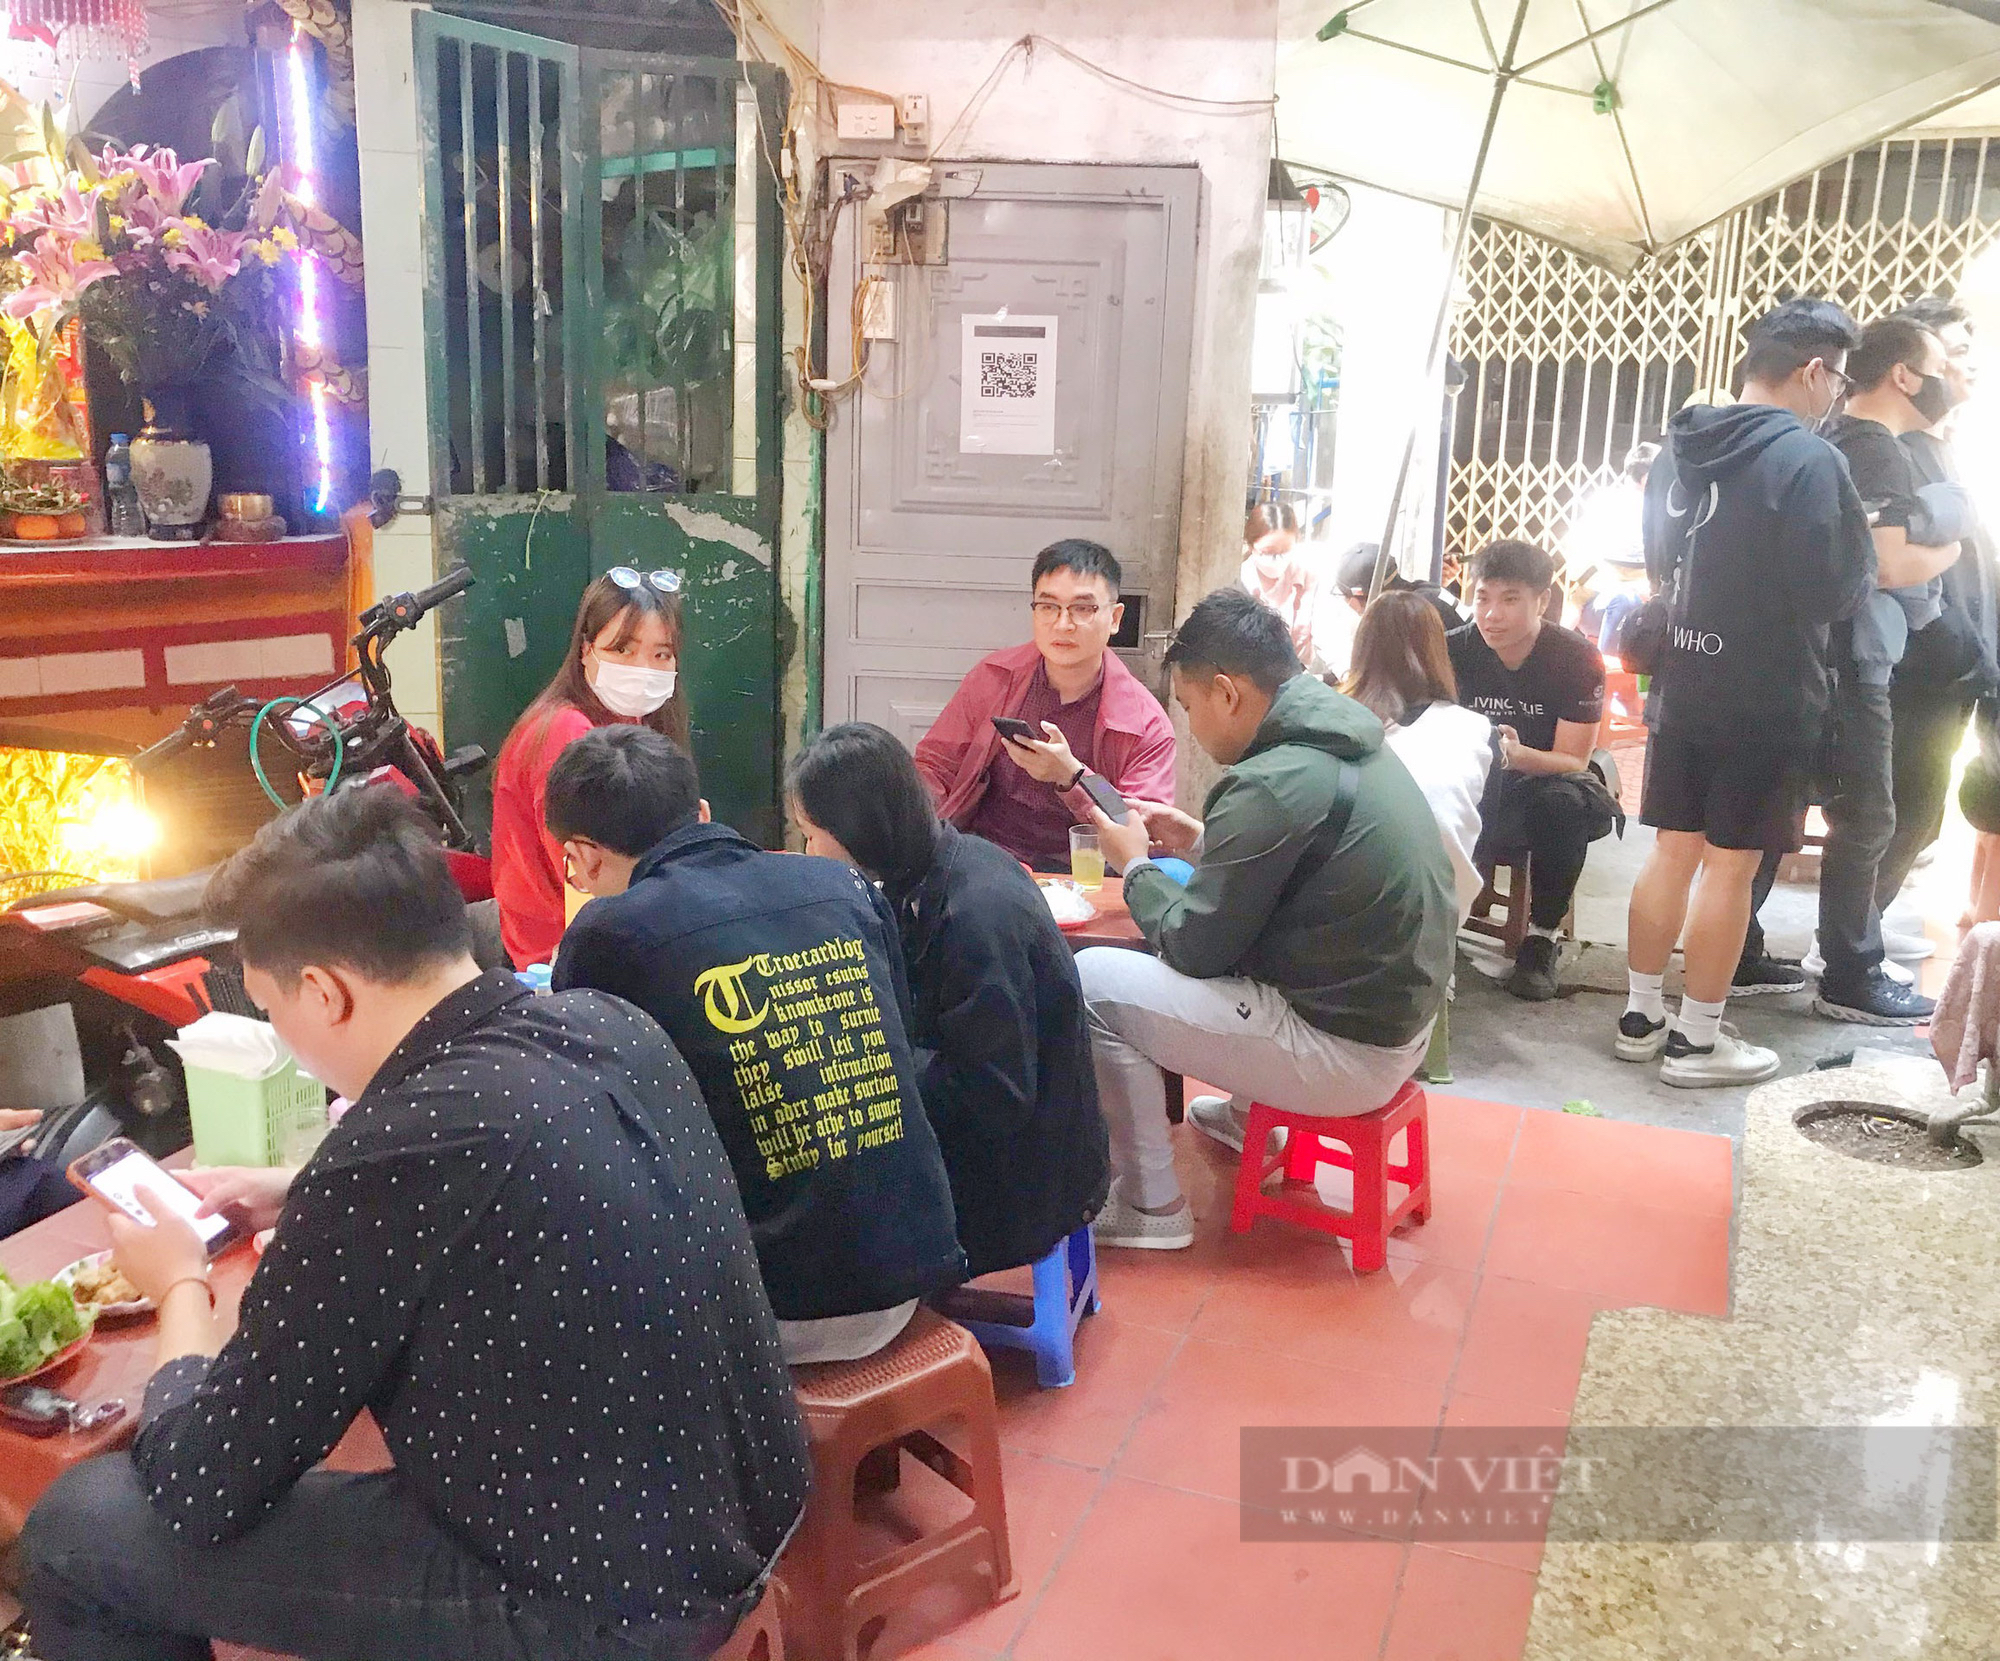 Chuyện lạ ở Hà Nội: Quán nhỏ nằm trong ngõ sâu mà khách đến nườm nượp, thu cả chục triệu mỗi ngày - Ảnh 3.